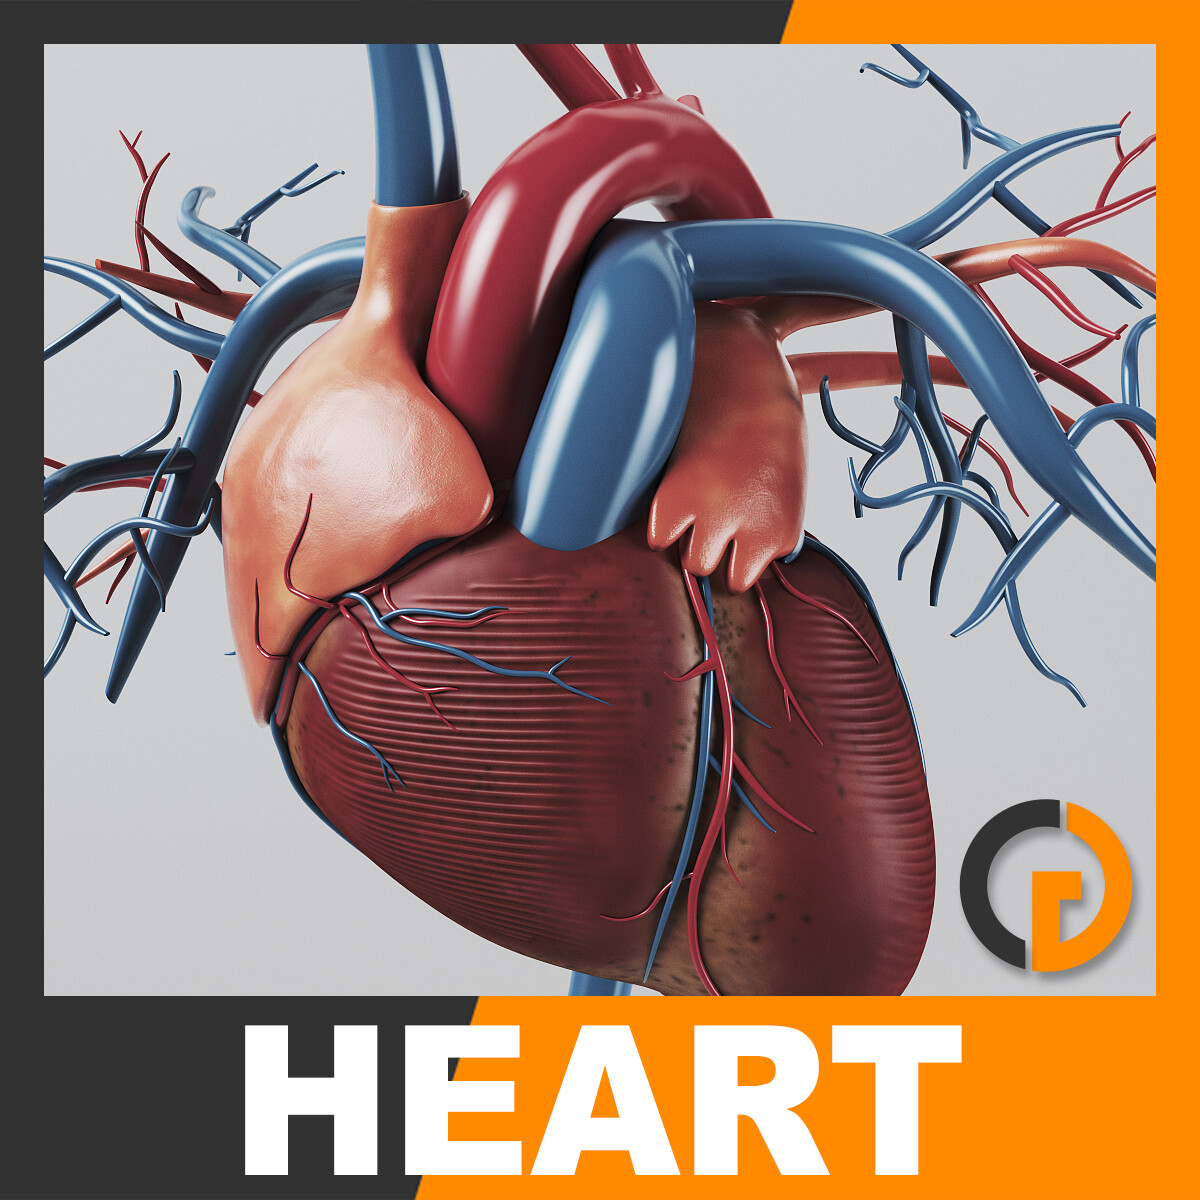 Сердца майя. 3д модель сердца человека. 3д модель сердца с подписями.